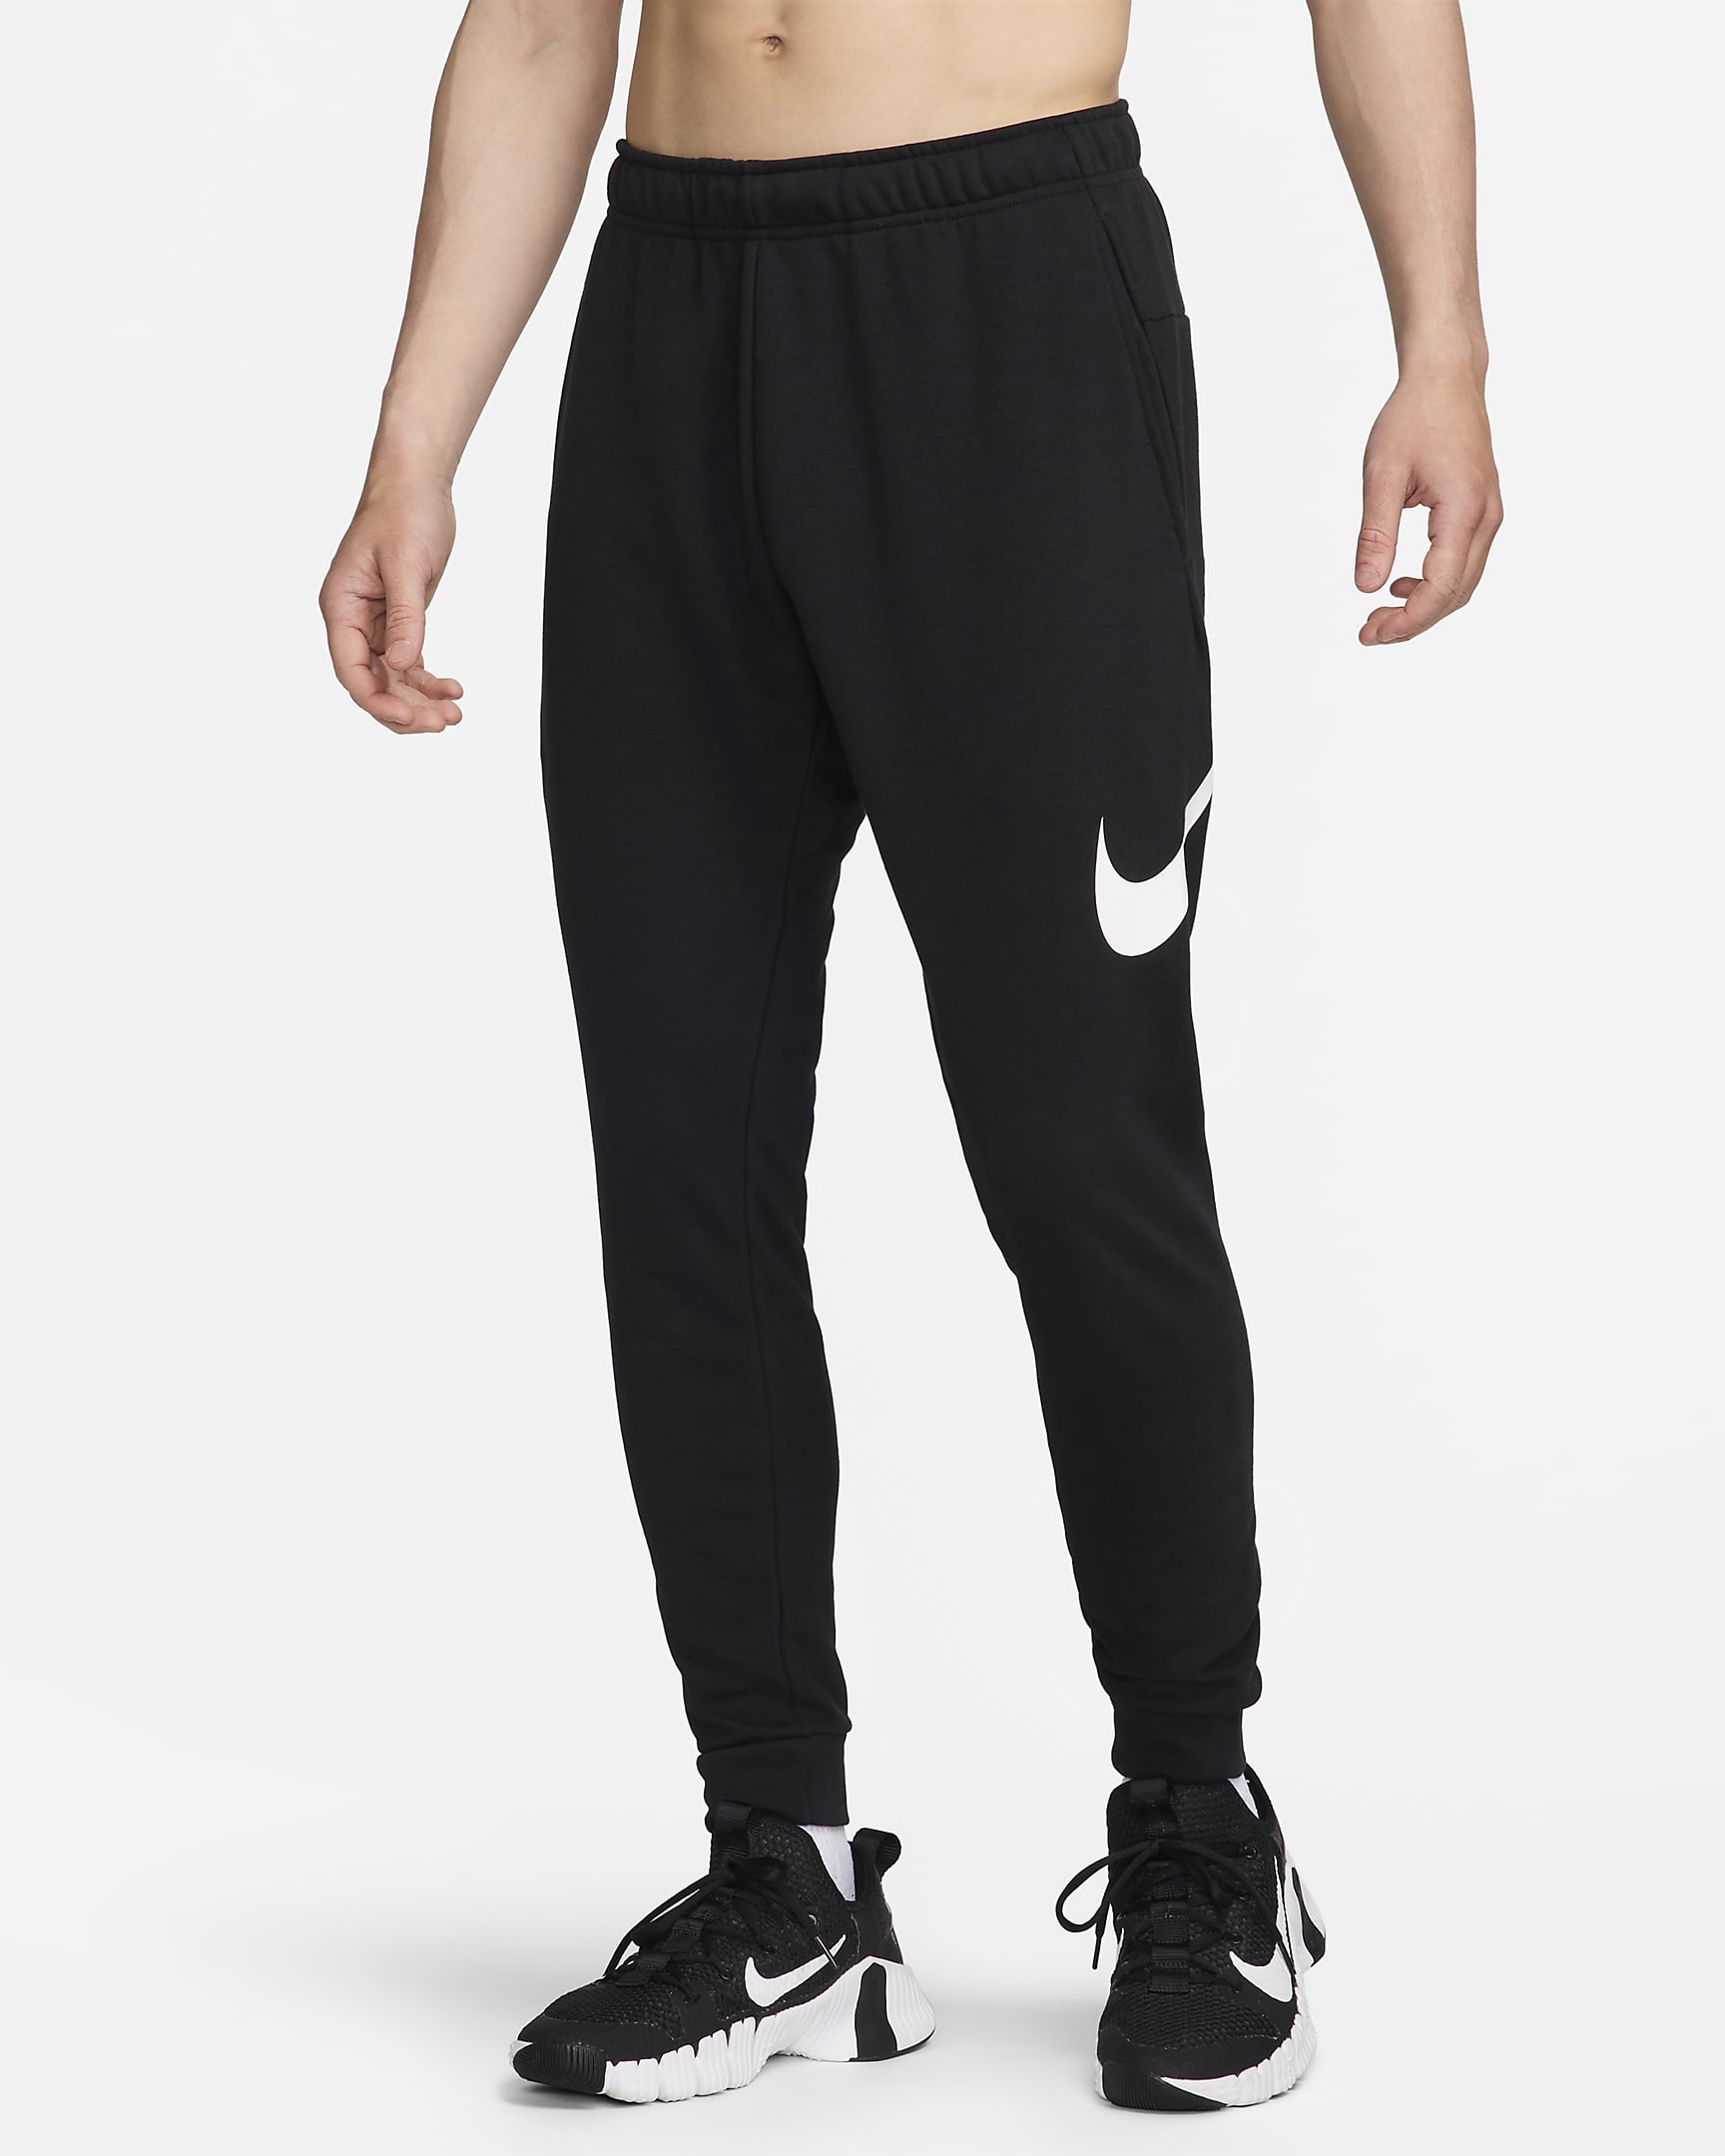 Nike Dri-FIT Men's Tapered Training Trousers. Nike SG